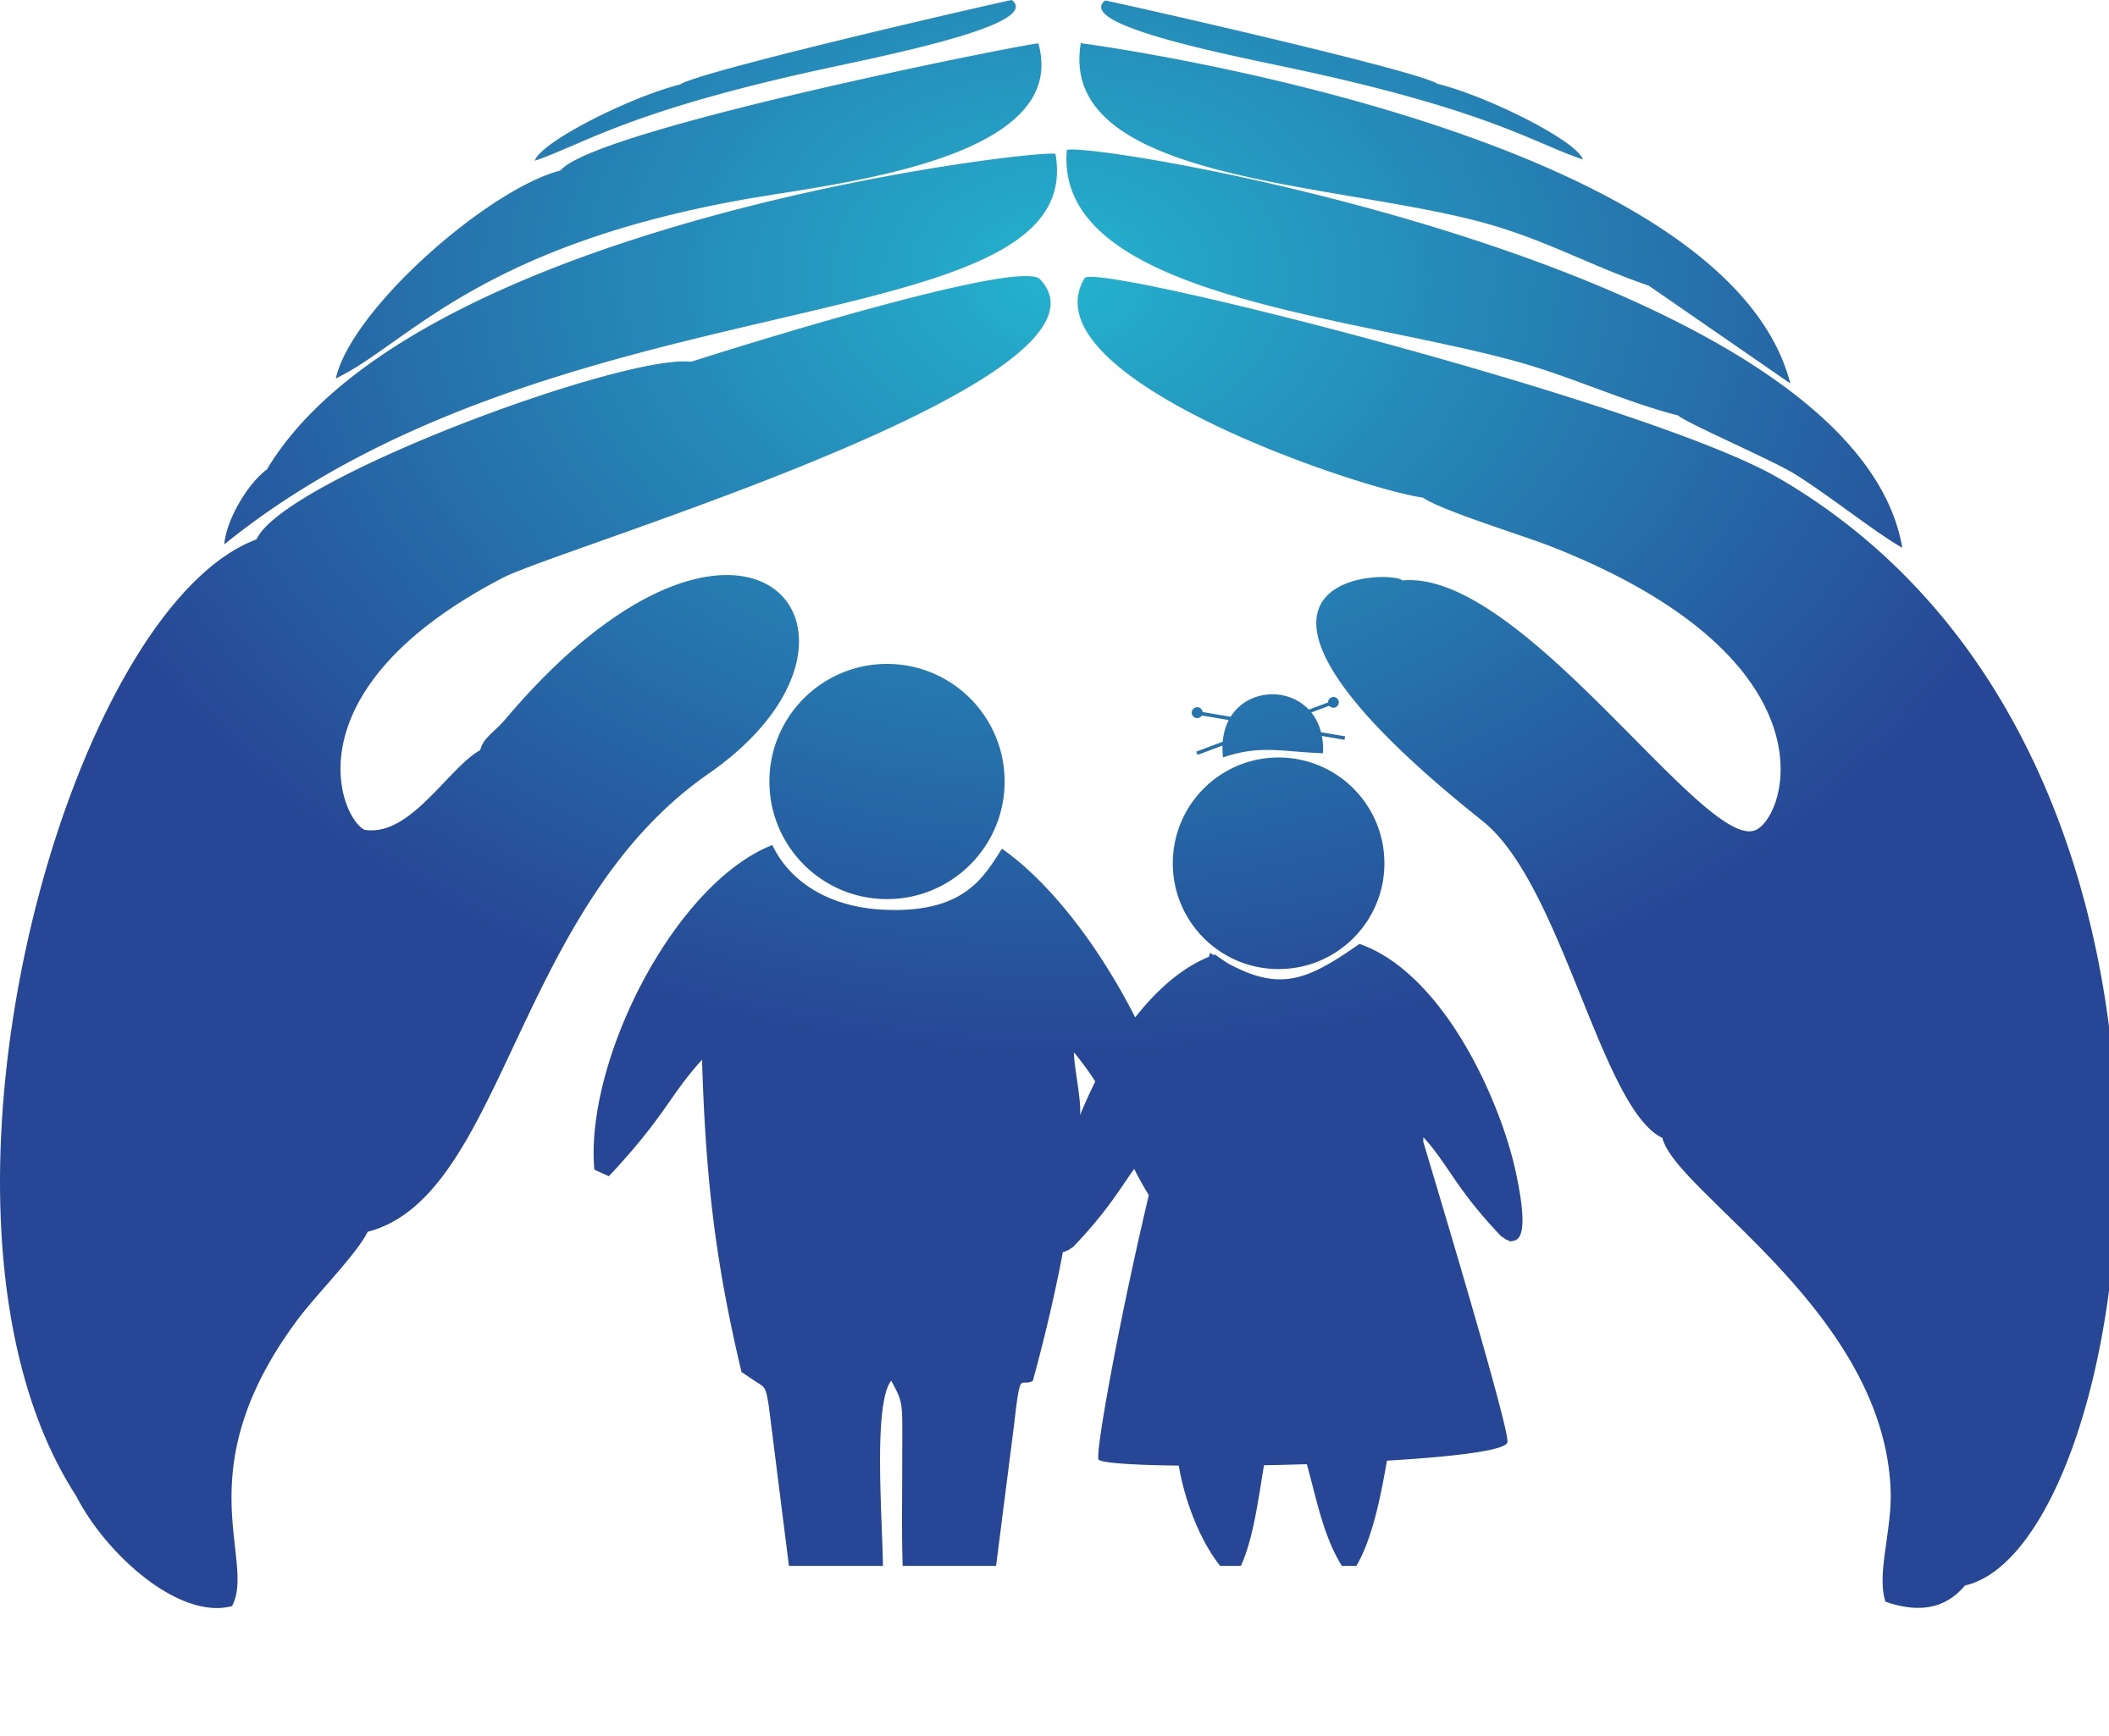 Фонд поддержки людей. Социальная защита. Символ социальной защиты. Логотип социальной защиты. Эмблема социальной работы.